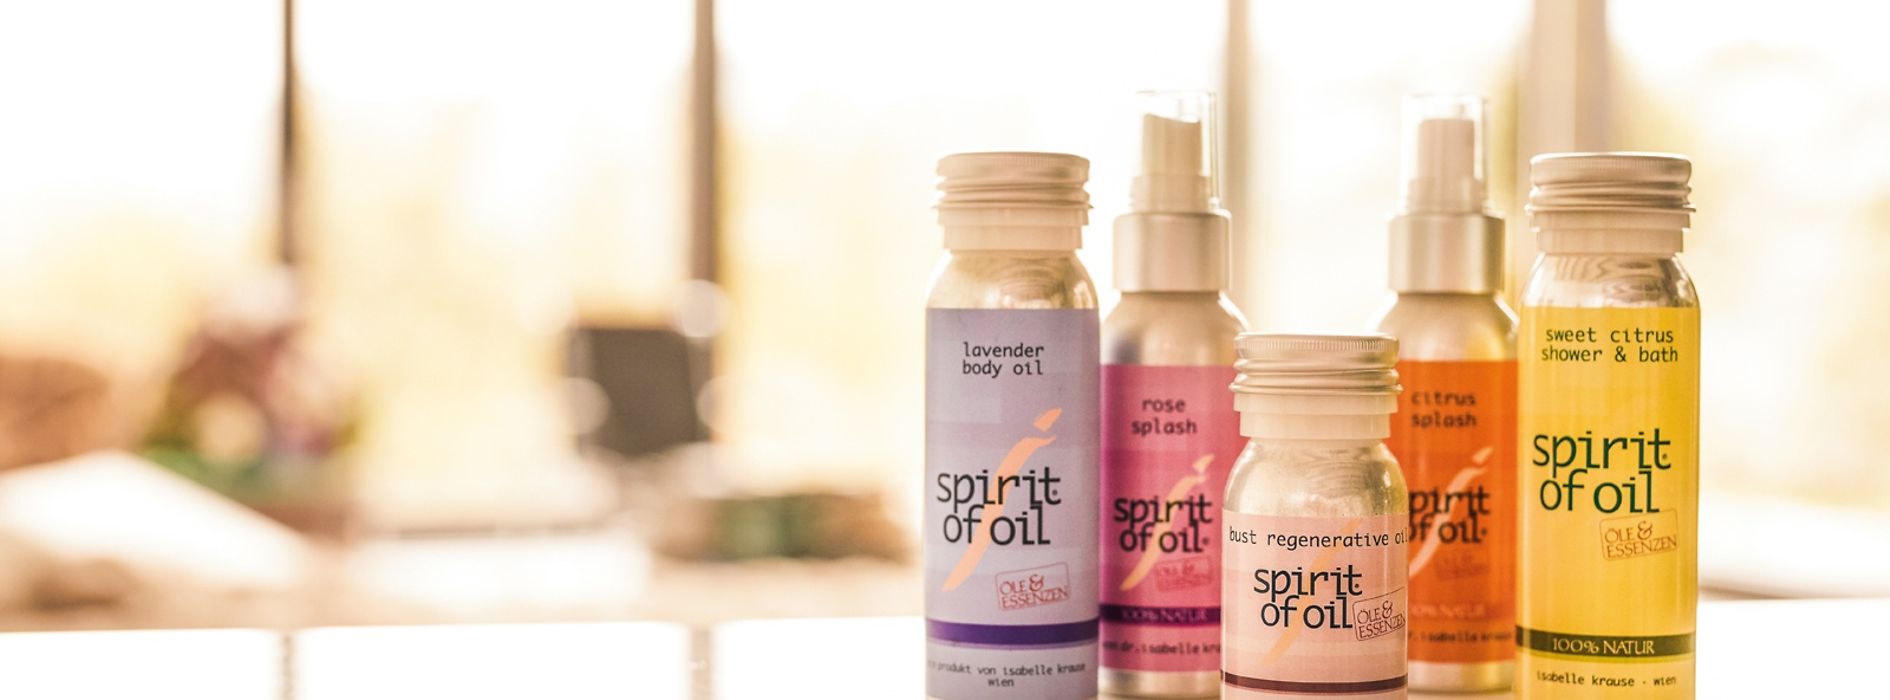 spirit of oil, prodotti per la cura del corpo